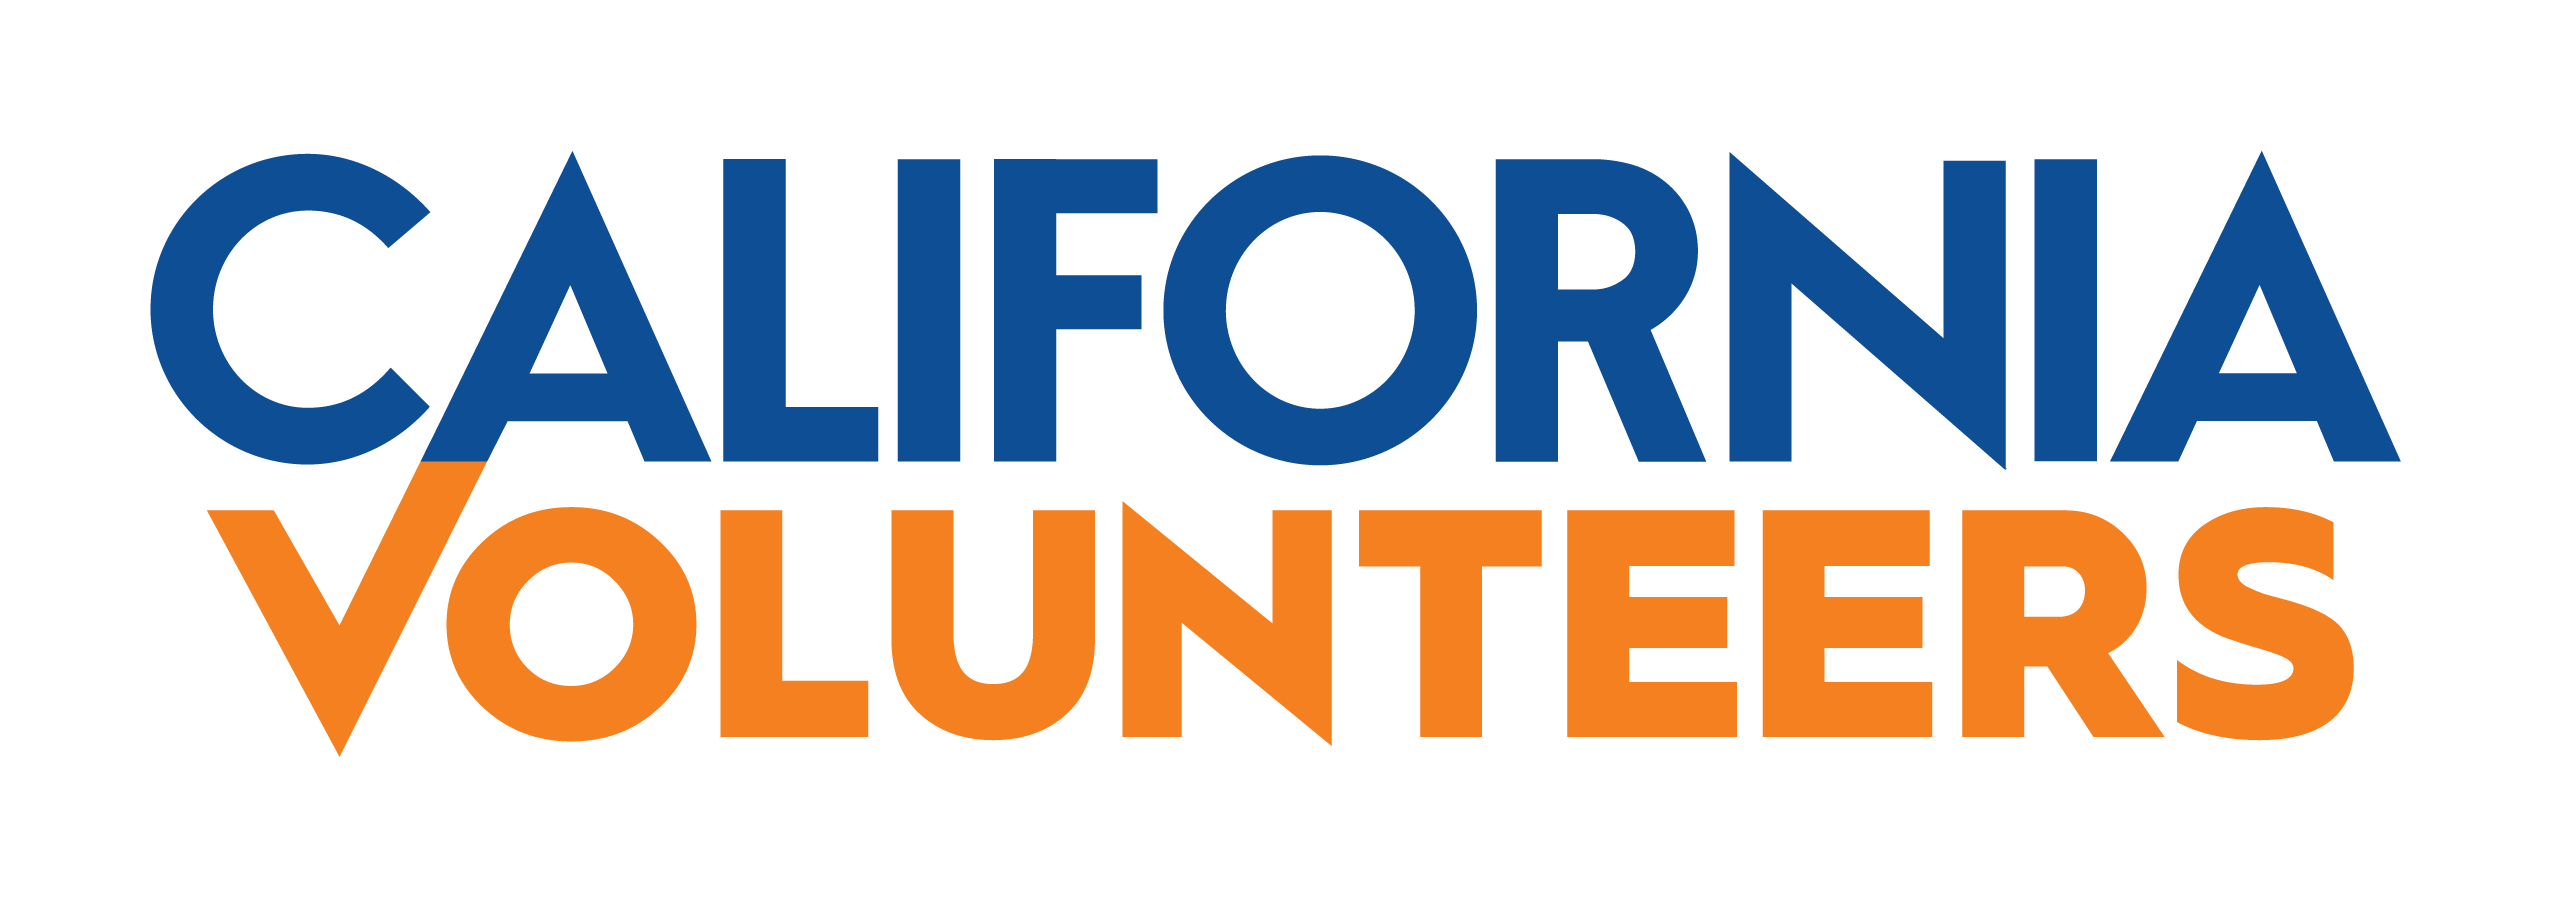 Volunteers Logo - California Volunteers | California Volunteers